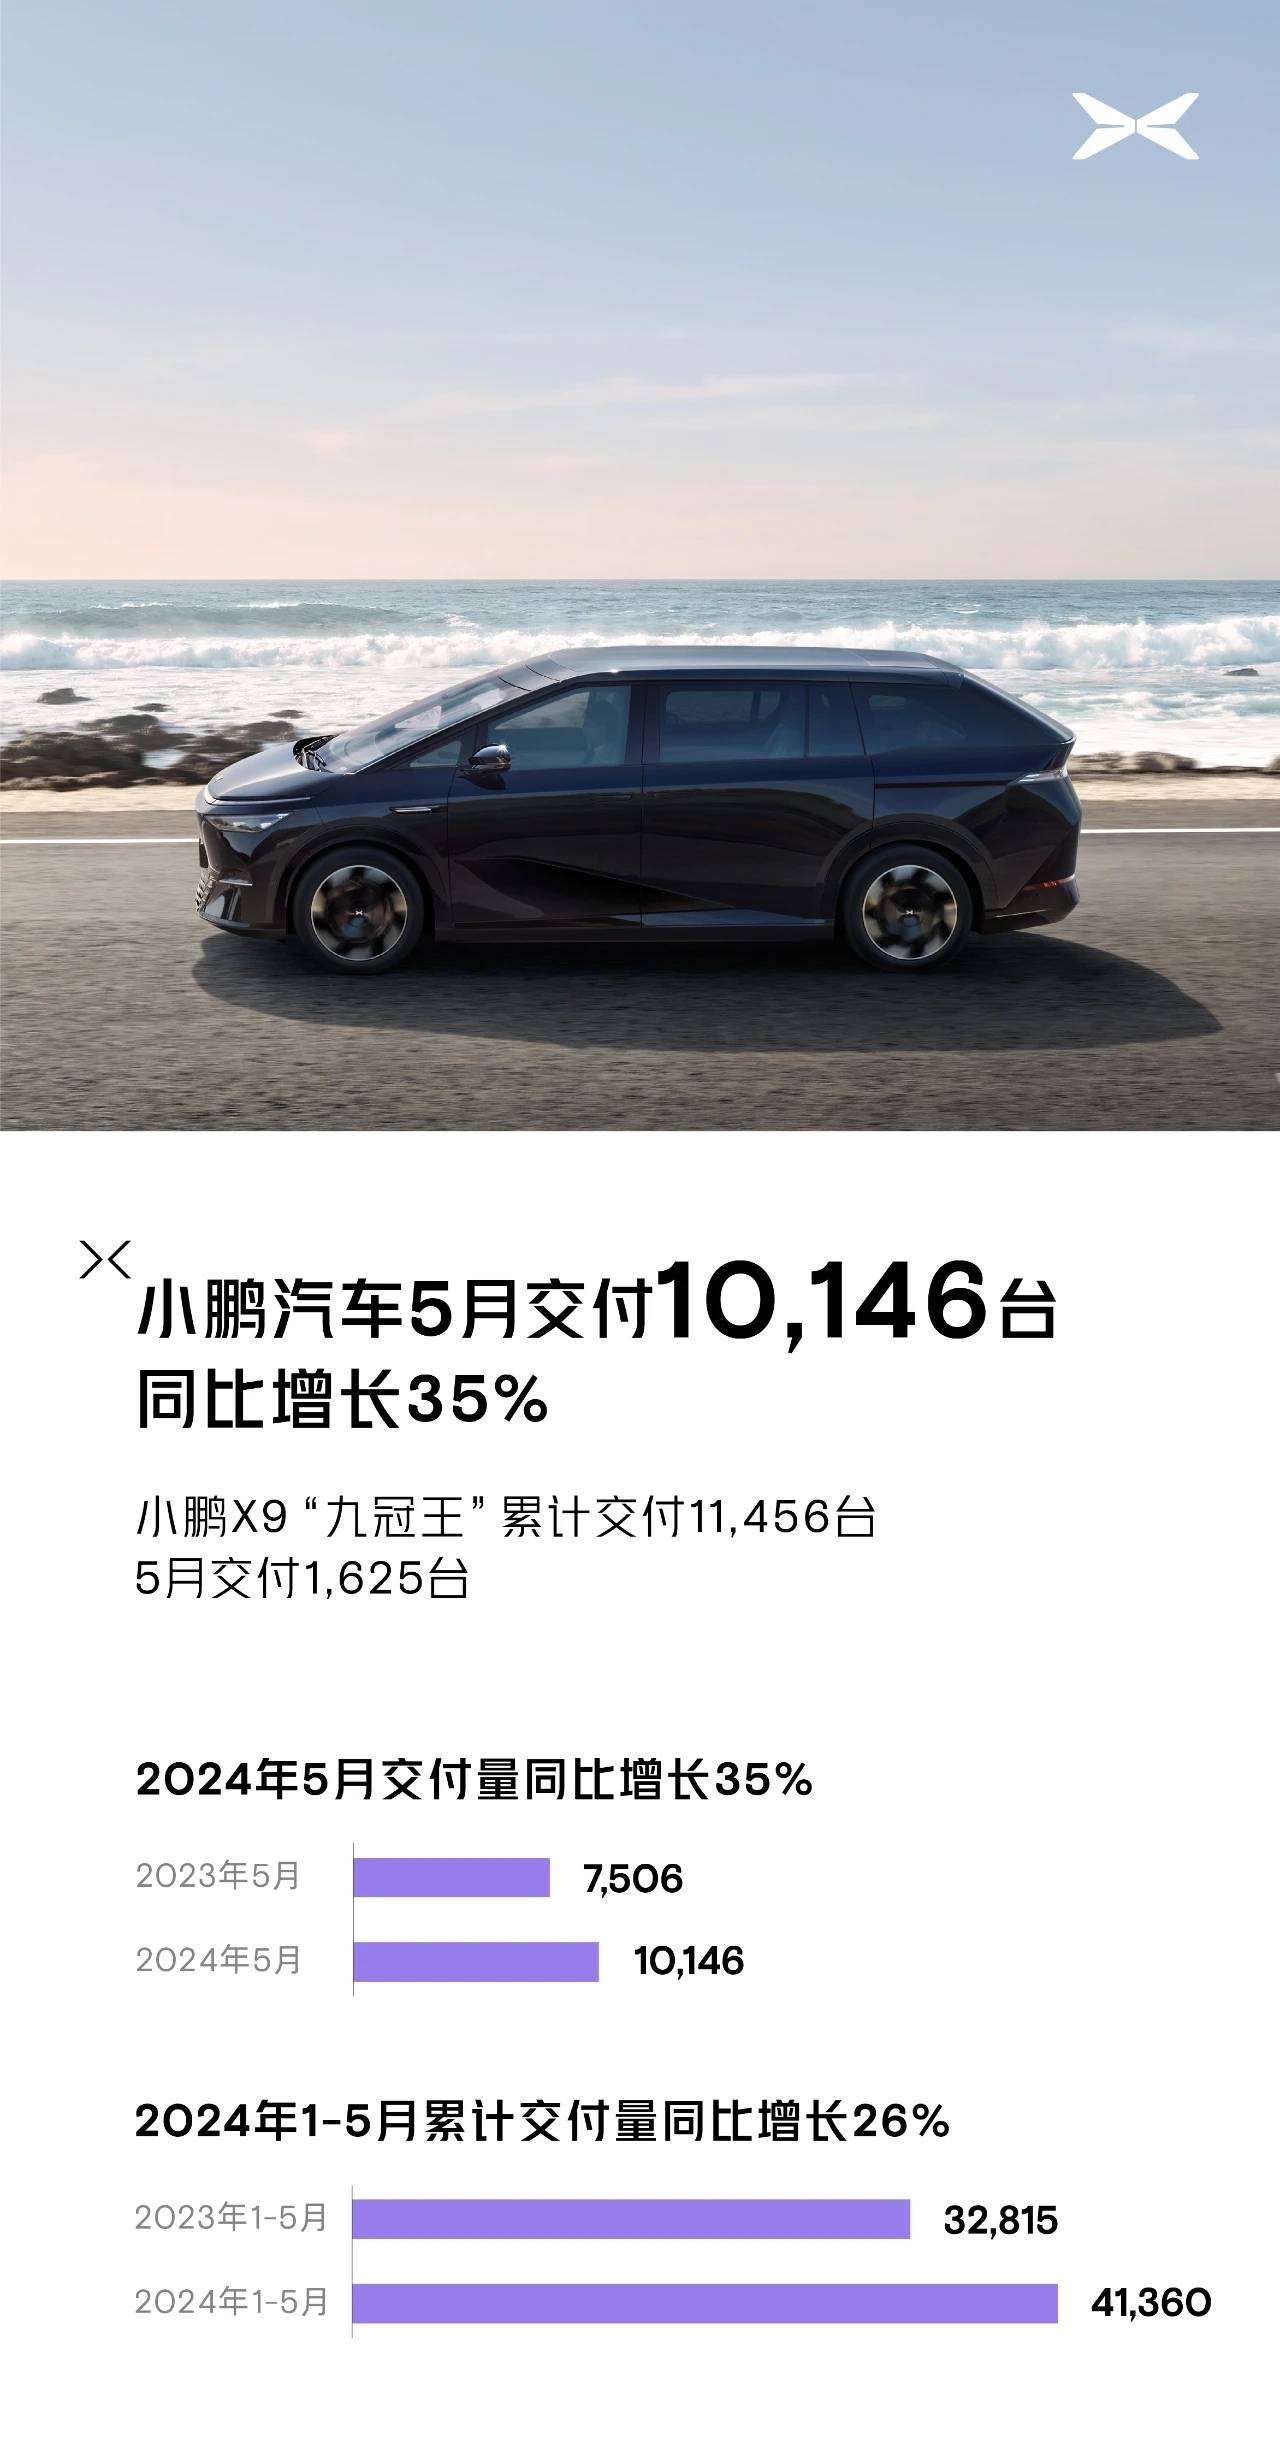 小鹏汽车5月共交付新车10146辆 搜狐汽车全球快讯 同比增长35%